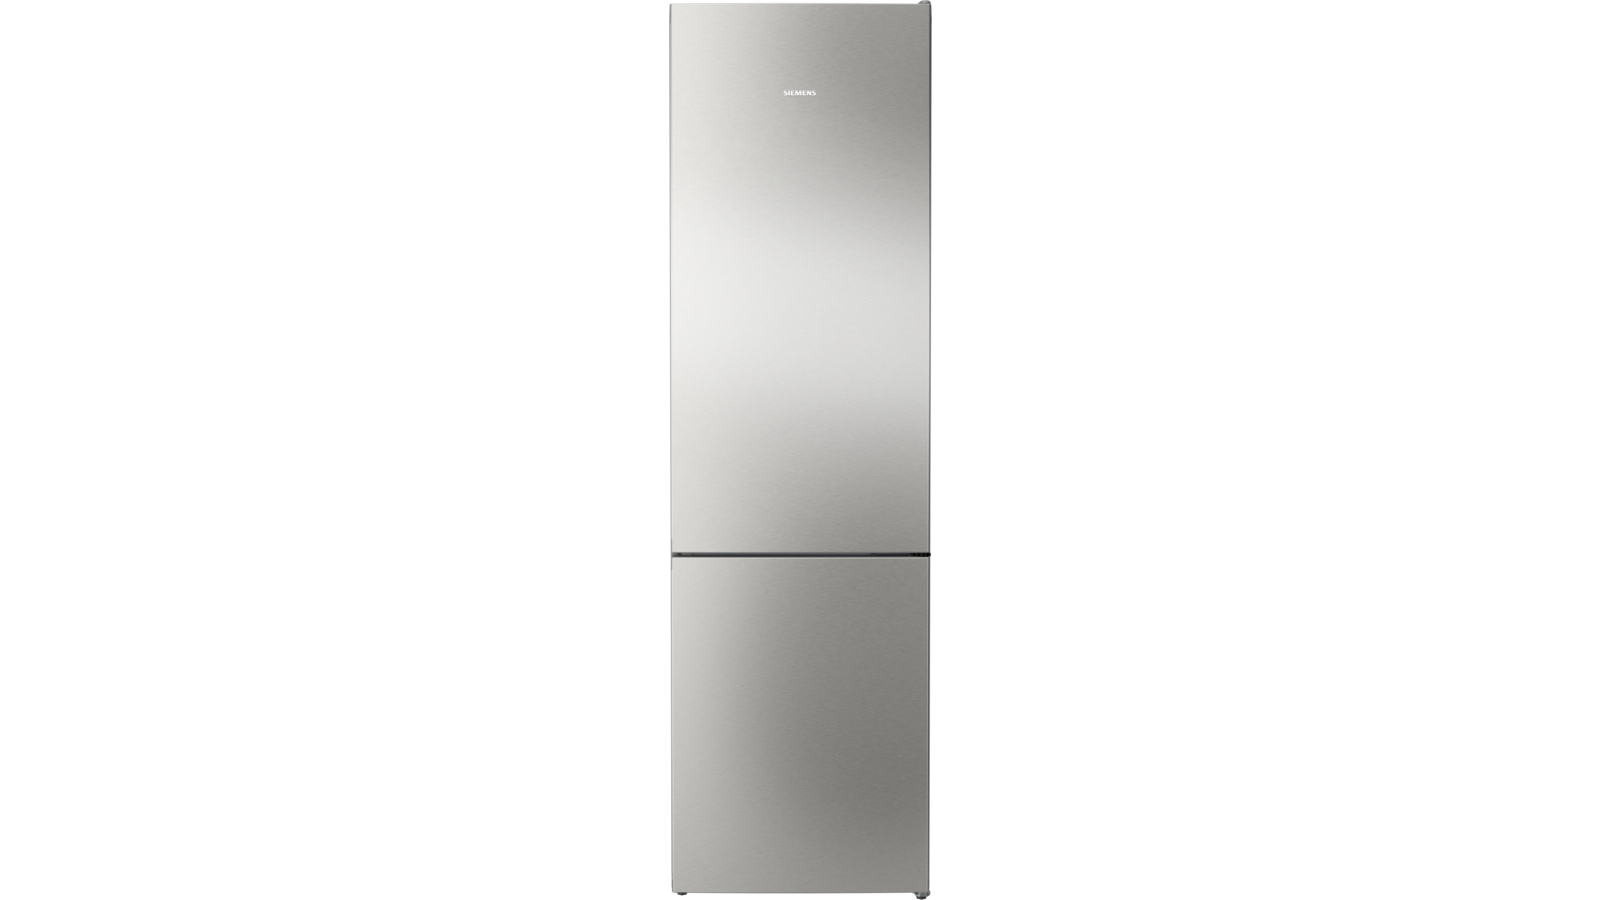 Refrigerateur congelateur en bas Siemens KG39N2IDF HYPERFRESH